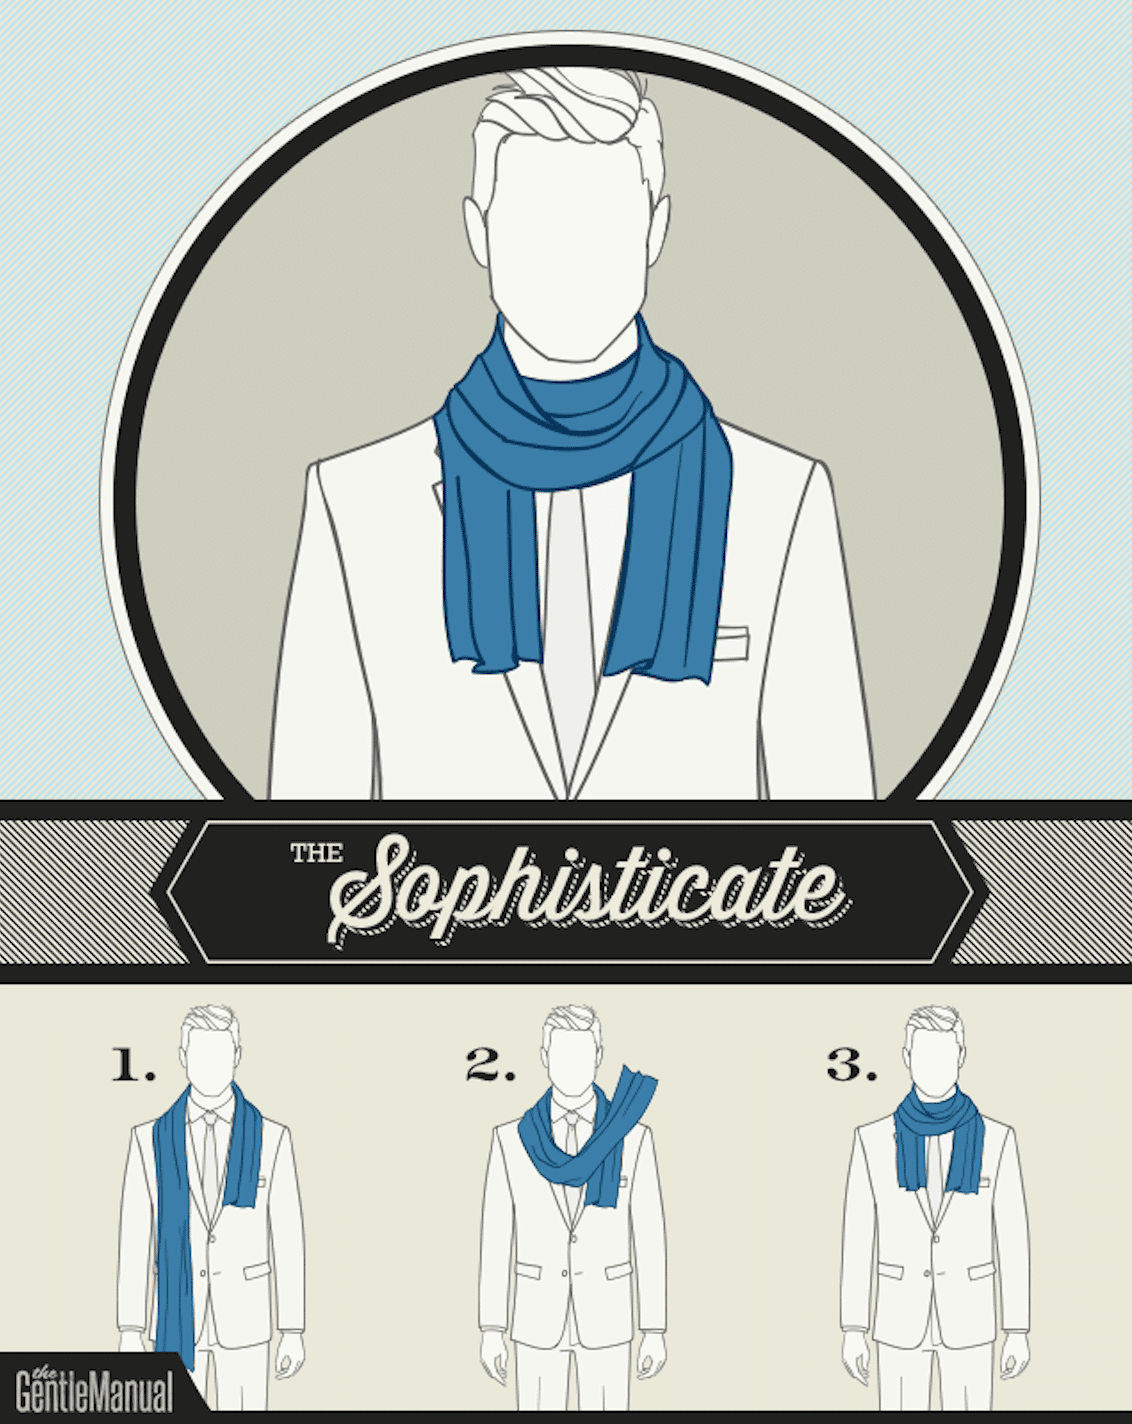 6 sätt att bära halsduk - Gentlemannaguiden